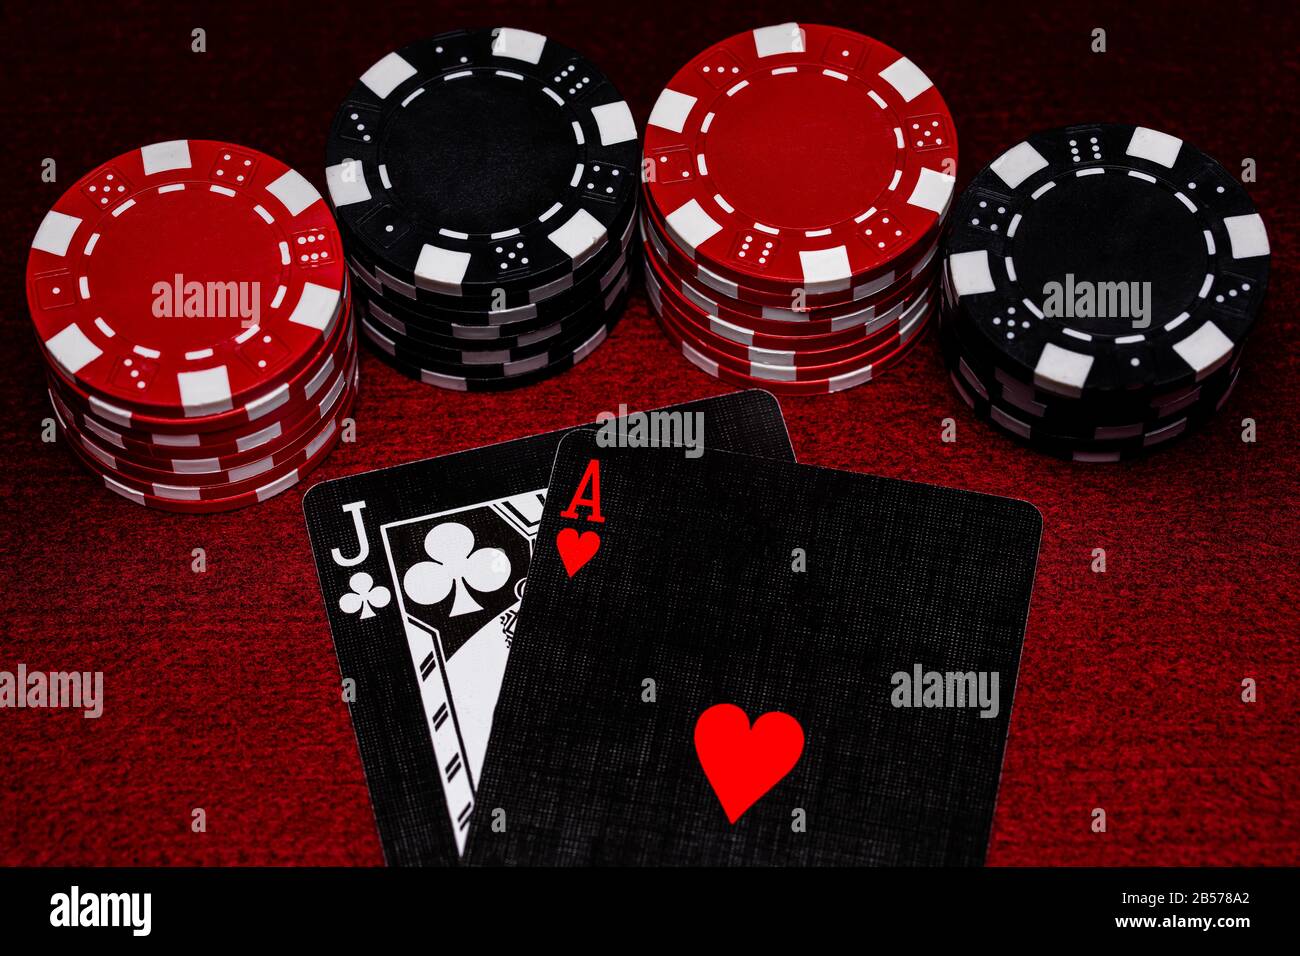 Eine Nahaufnahme der Blackjack Hand mit einzigartigen schwarzen, weißen und roten Karten mit Black and Red Clay Pokerchips auf einer dunkelroten Filztischoberfläche. Platz für Co Stockfoto